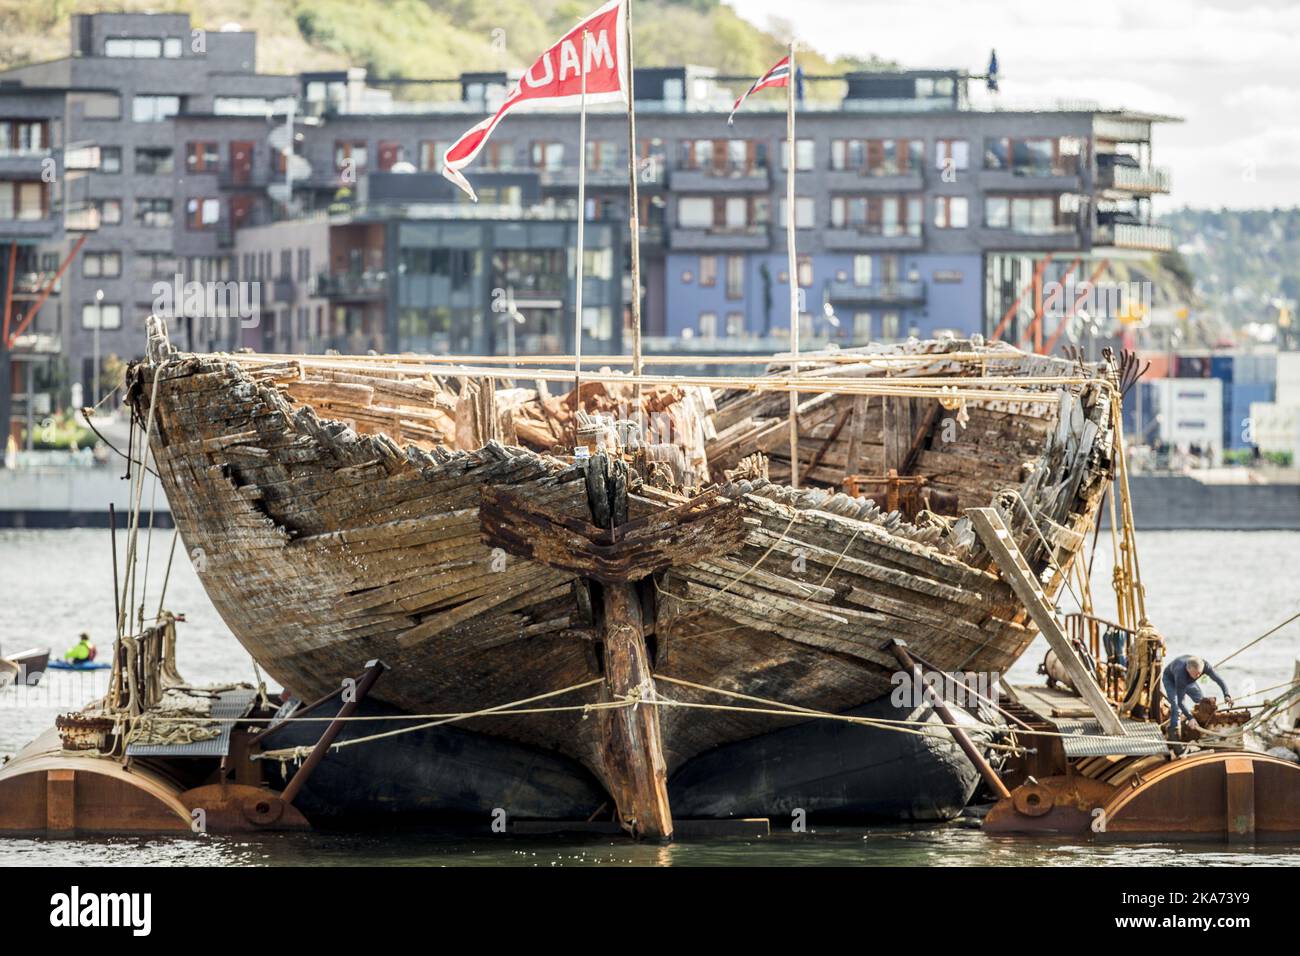 Oslo, Norvège 20180819. Maud était un navire construit pour Roald Amundsen pour sa deuxième expédition dans l'Arctique. Ici il est arrivé à Oslo où il n'a pas été depuis l'été 1918 photo: Stian Lysberg Solum / NTB scanpi Banque D'Images